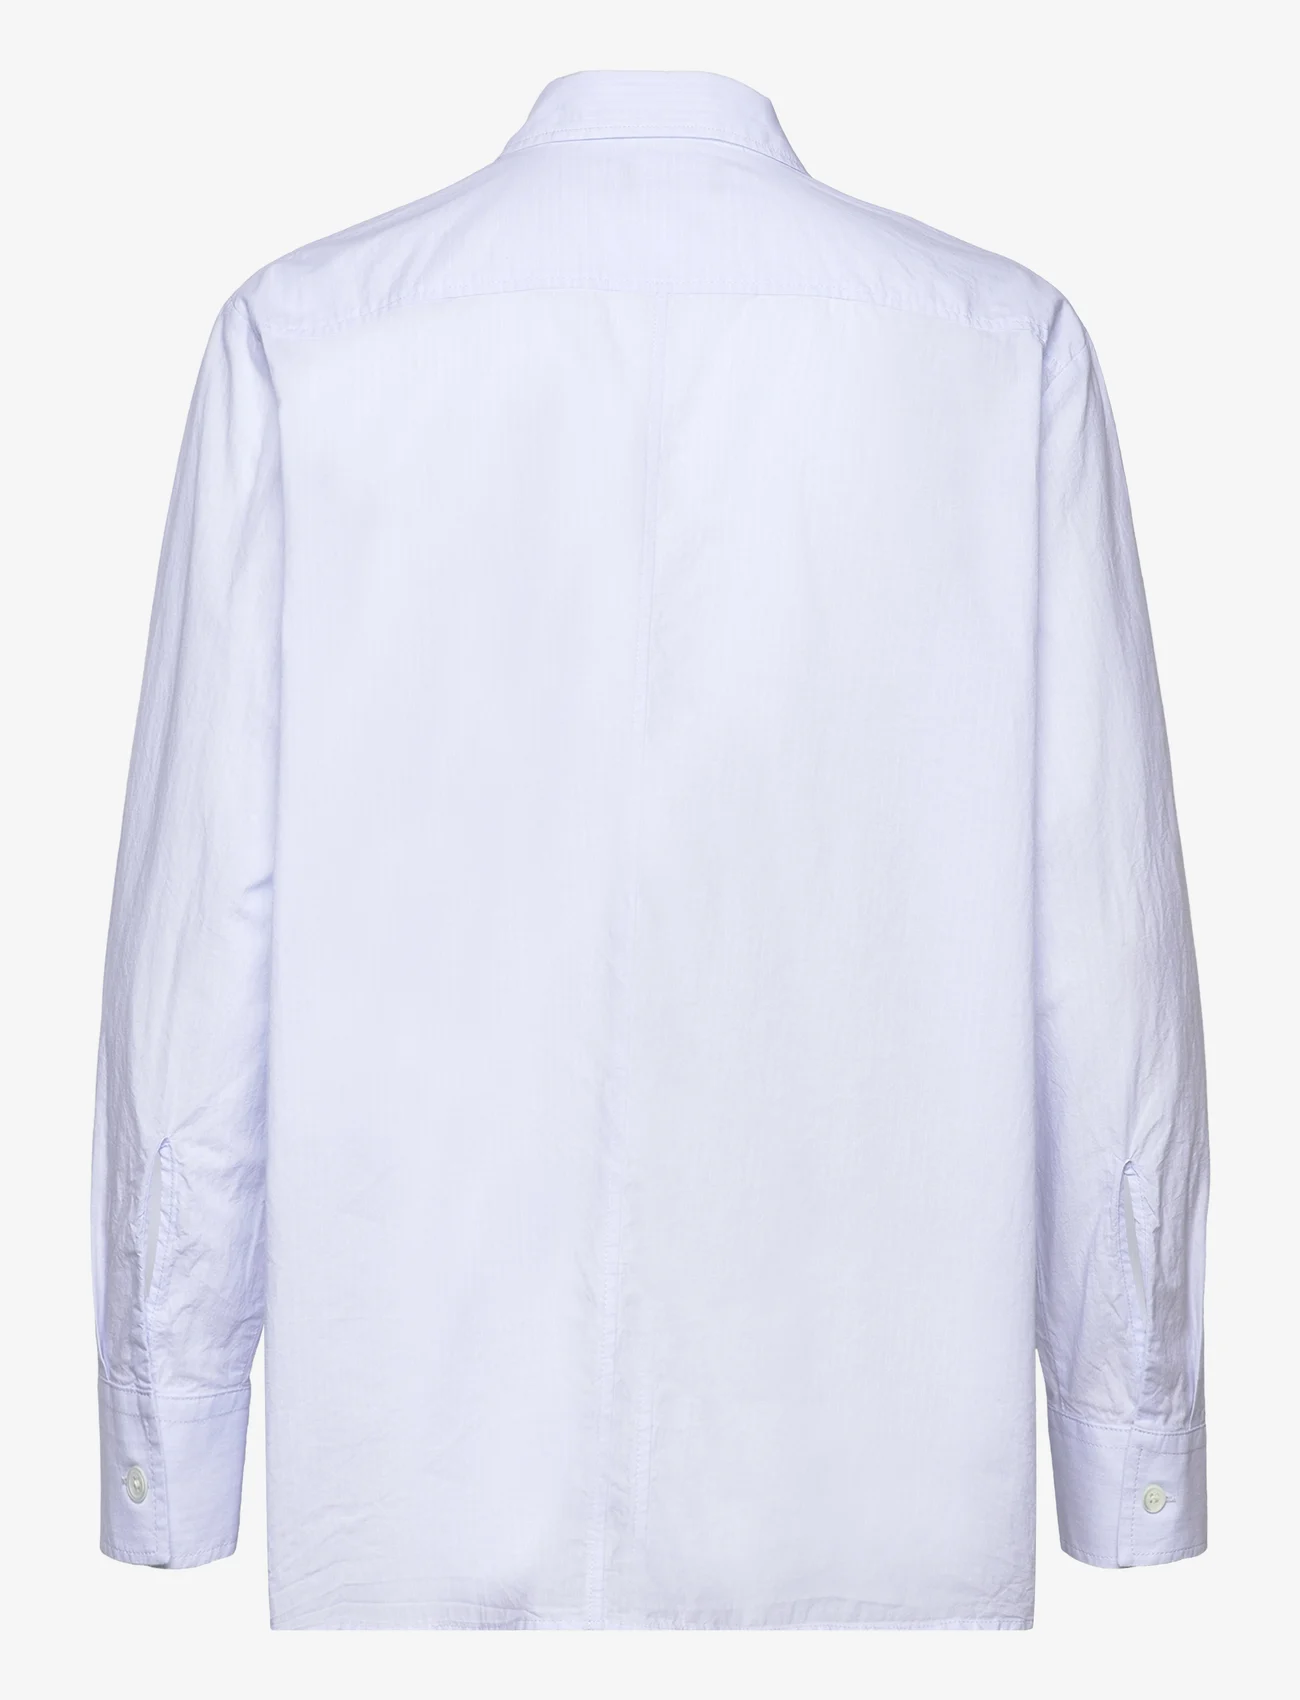 Hope - Boxy Shirt - langermede skjorter - light blue stripe - 1